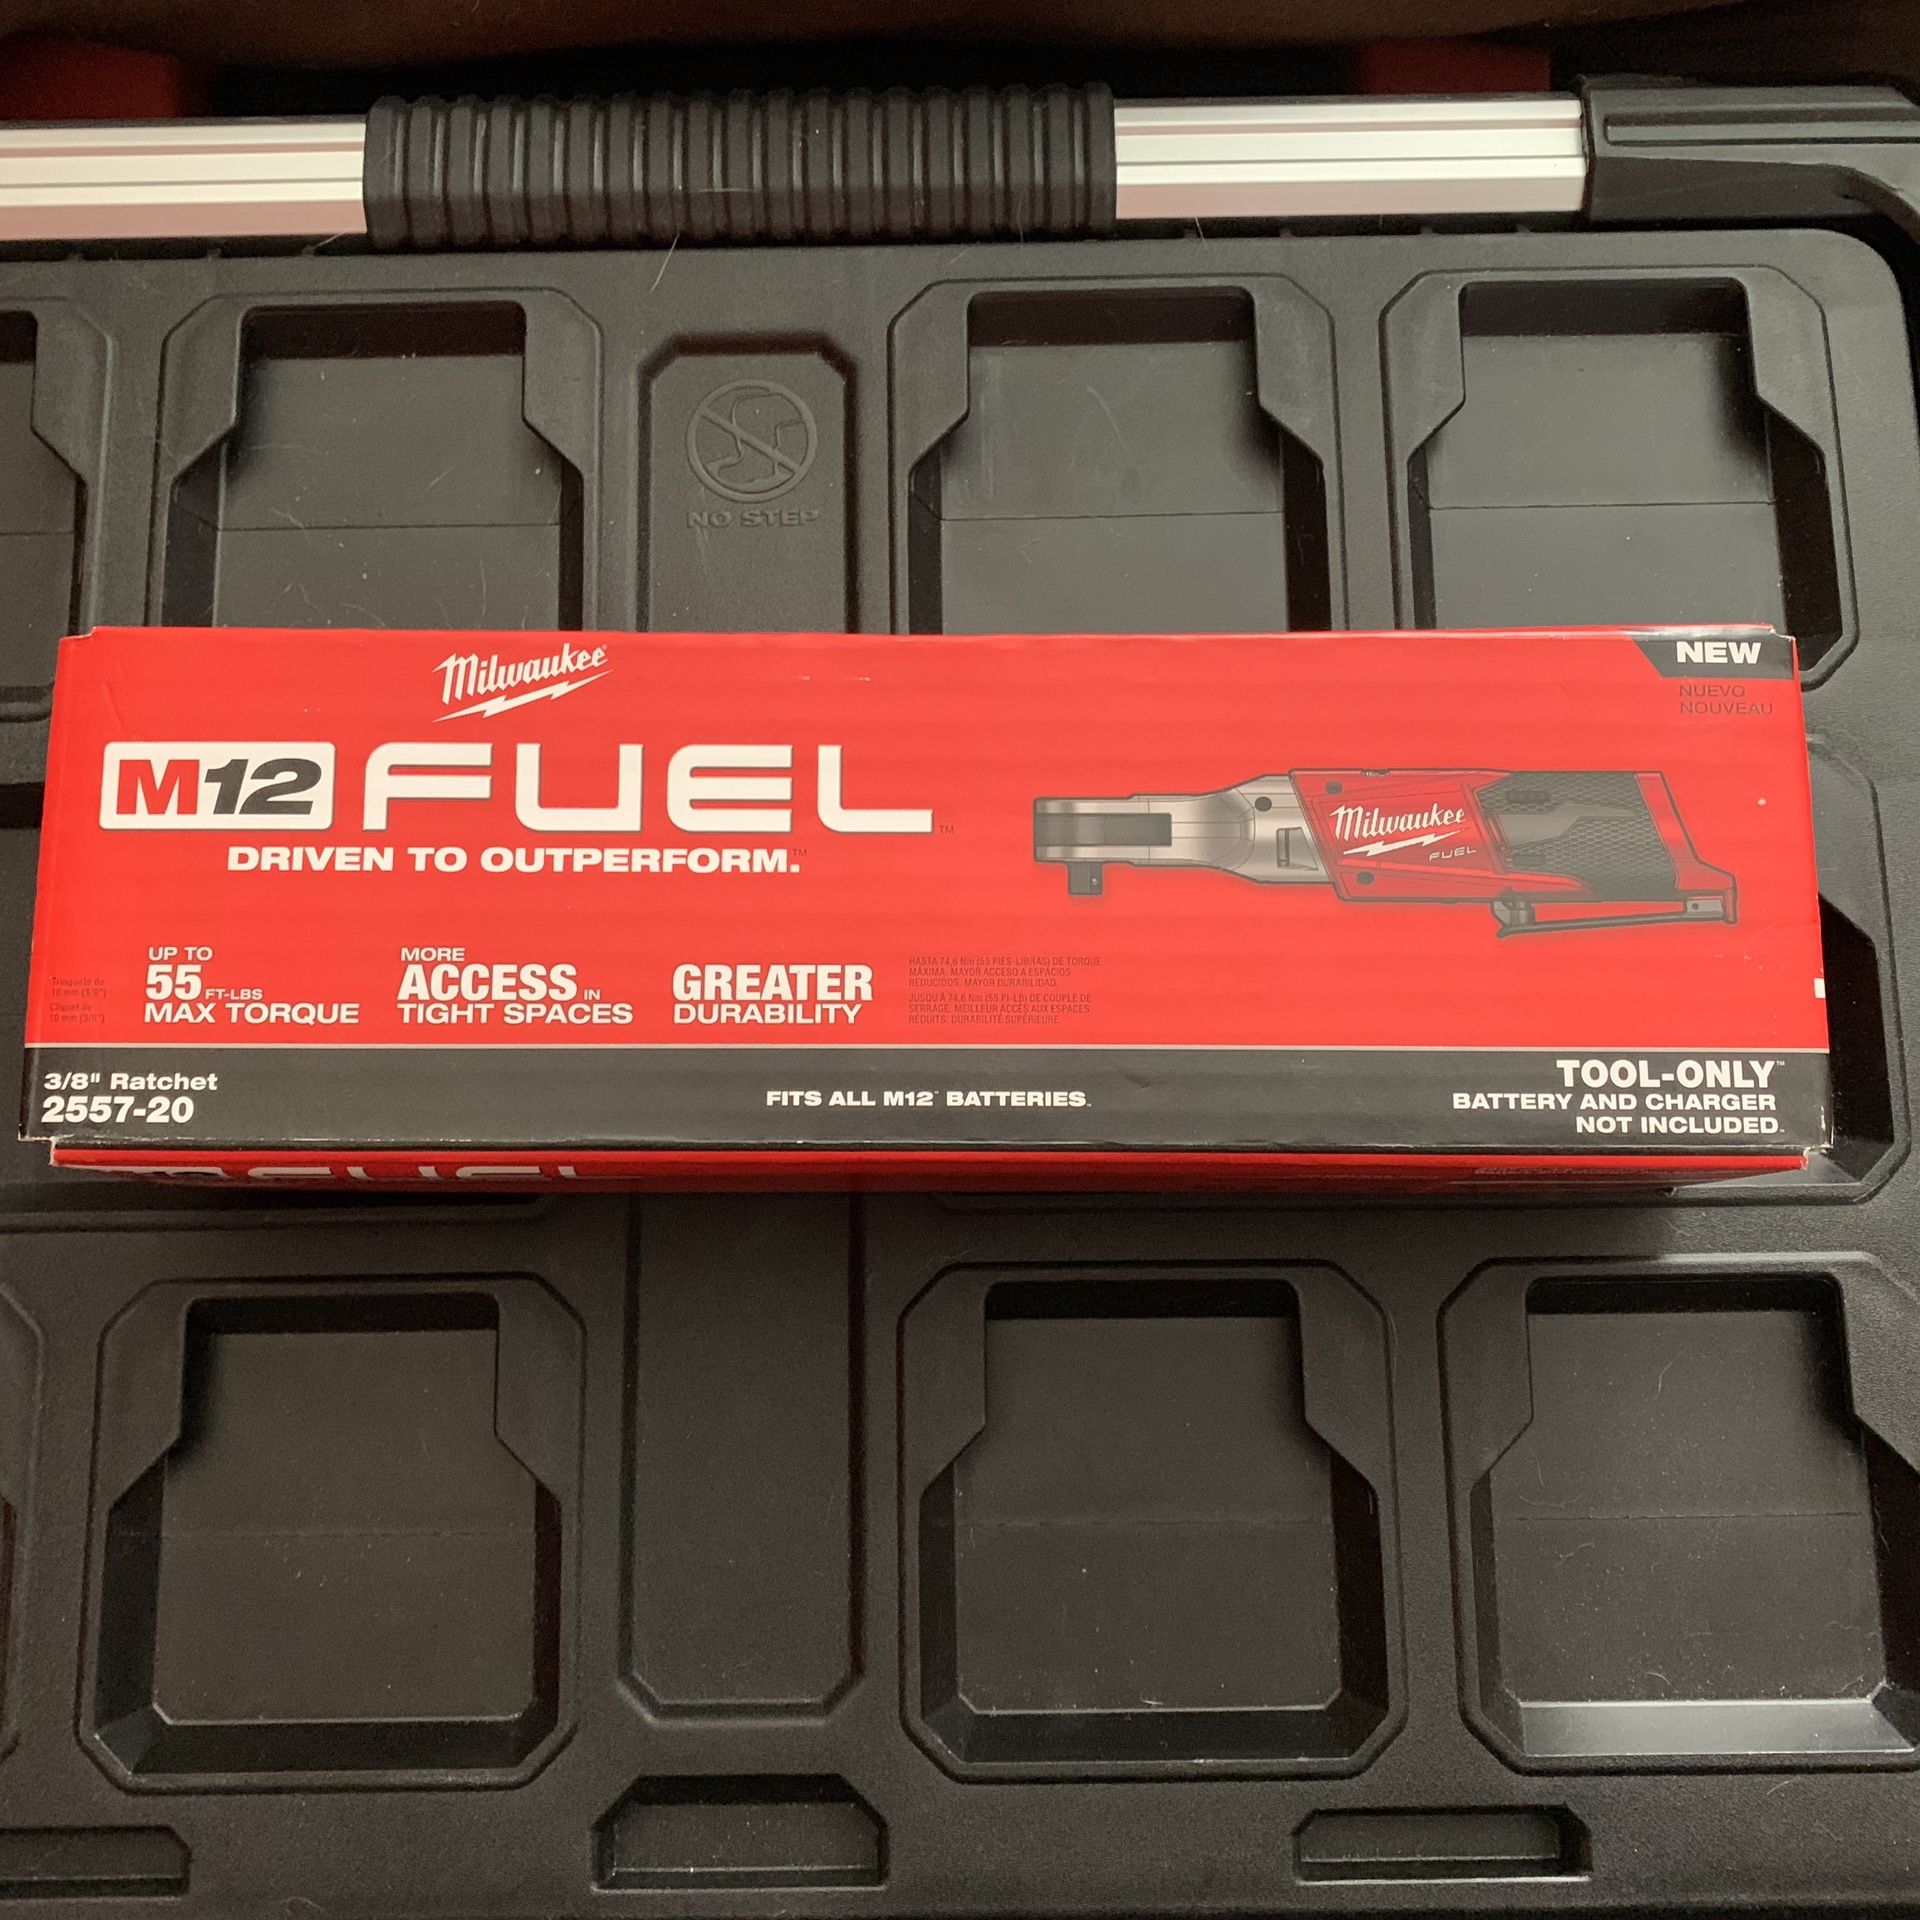 New Milwaukee fuel brushless M12 3/8” ratchet